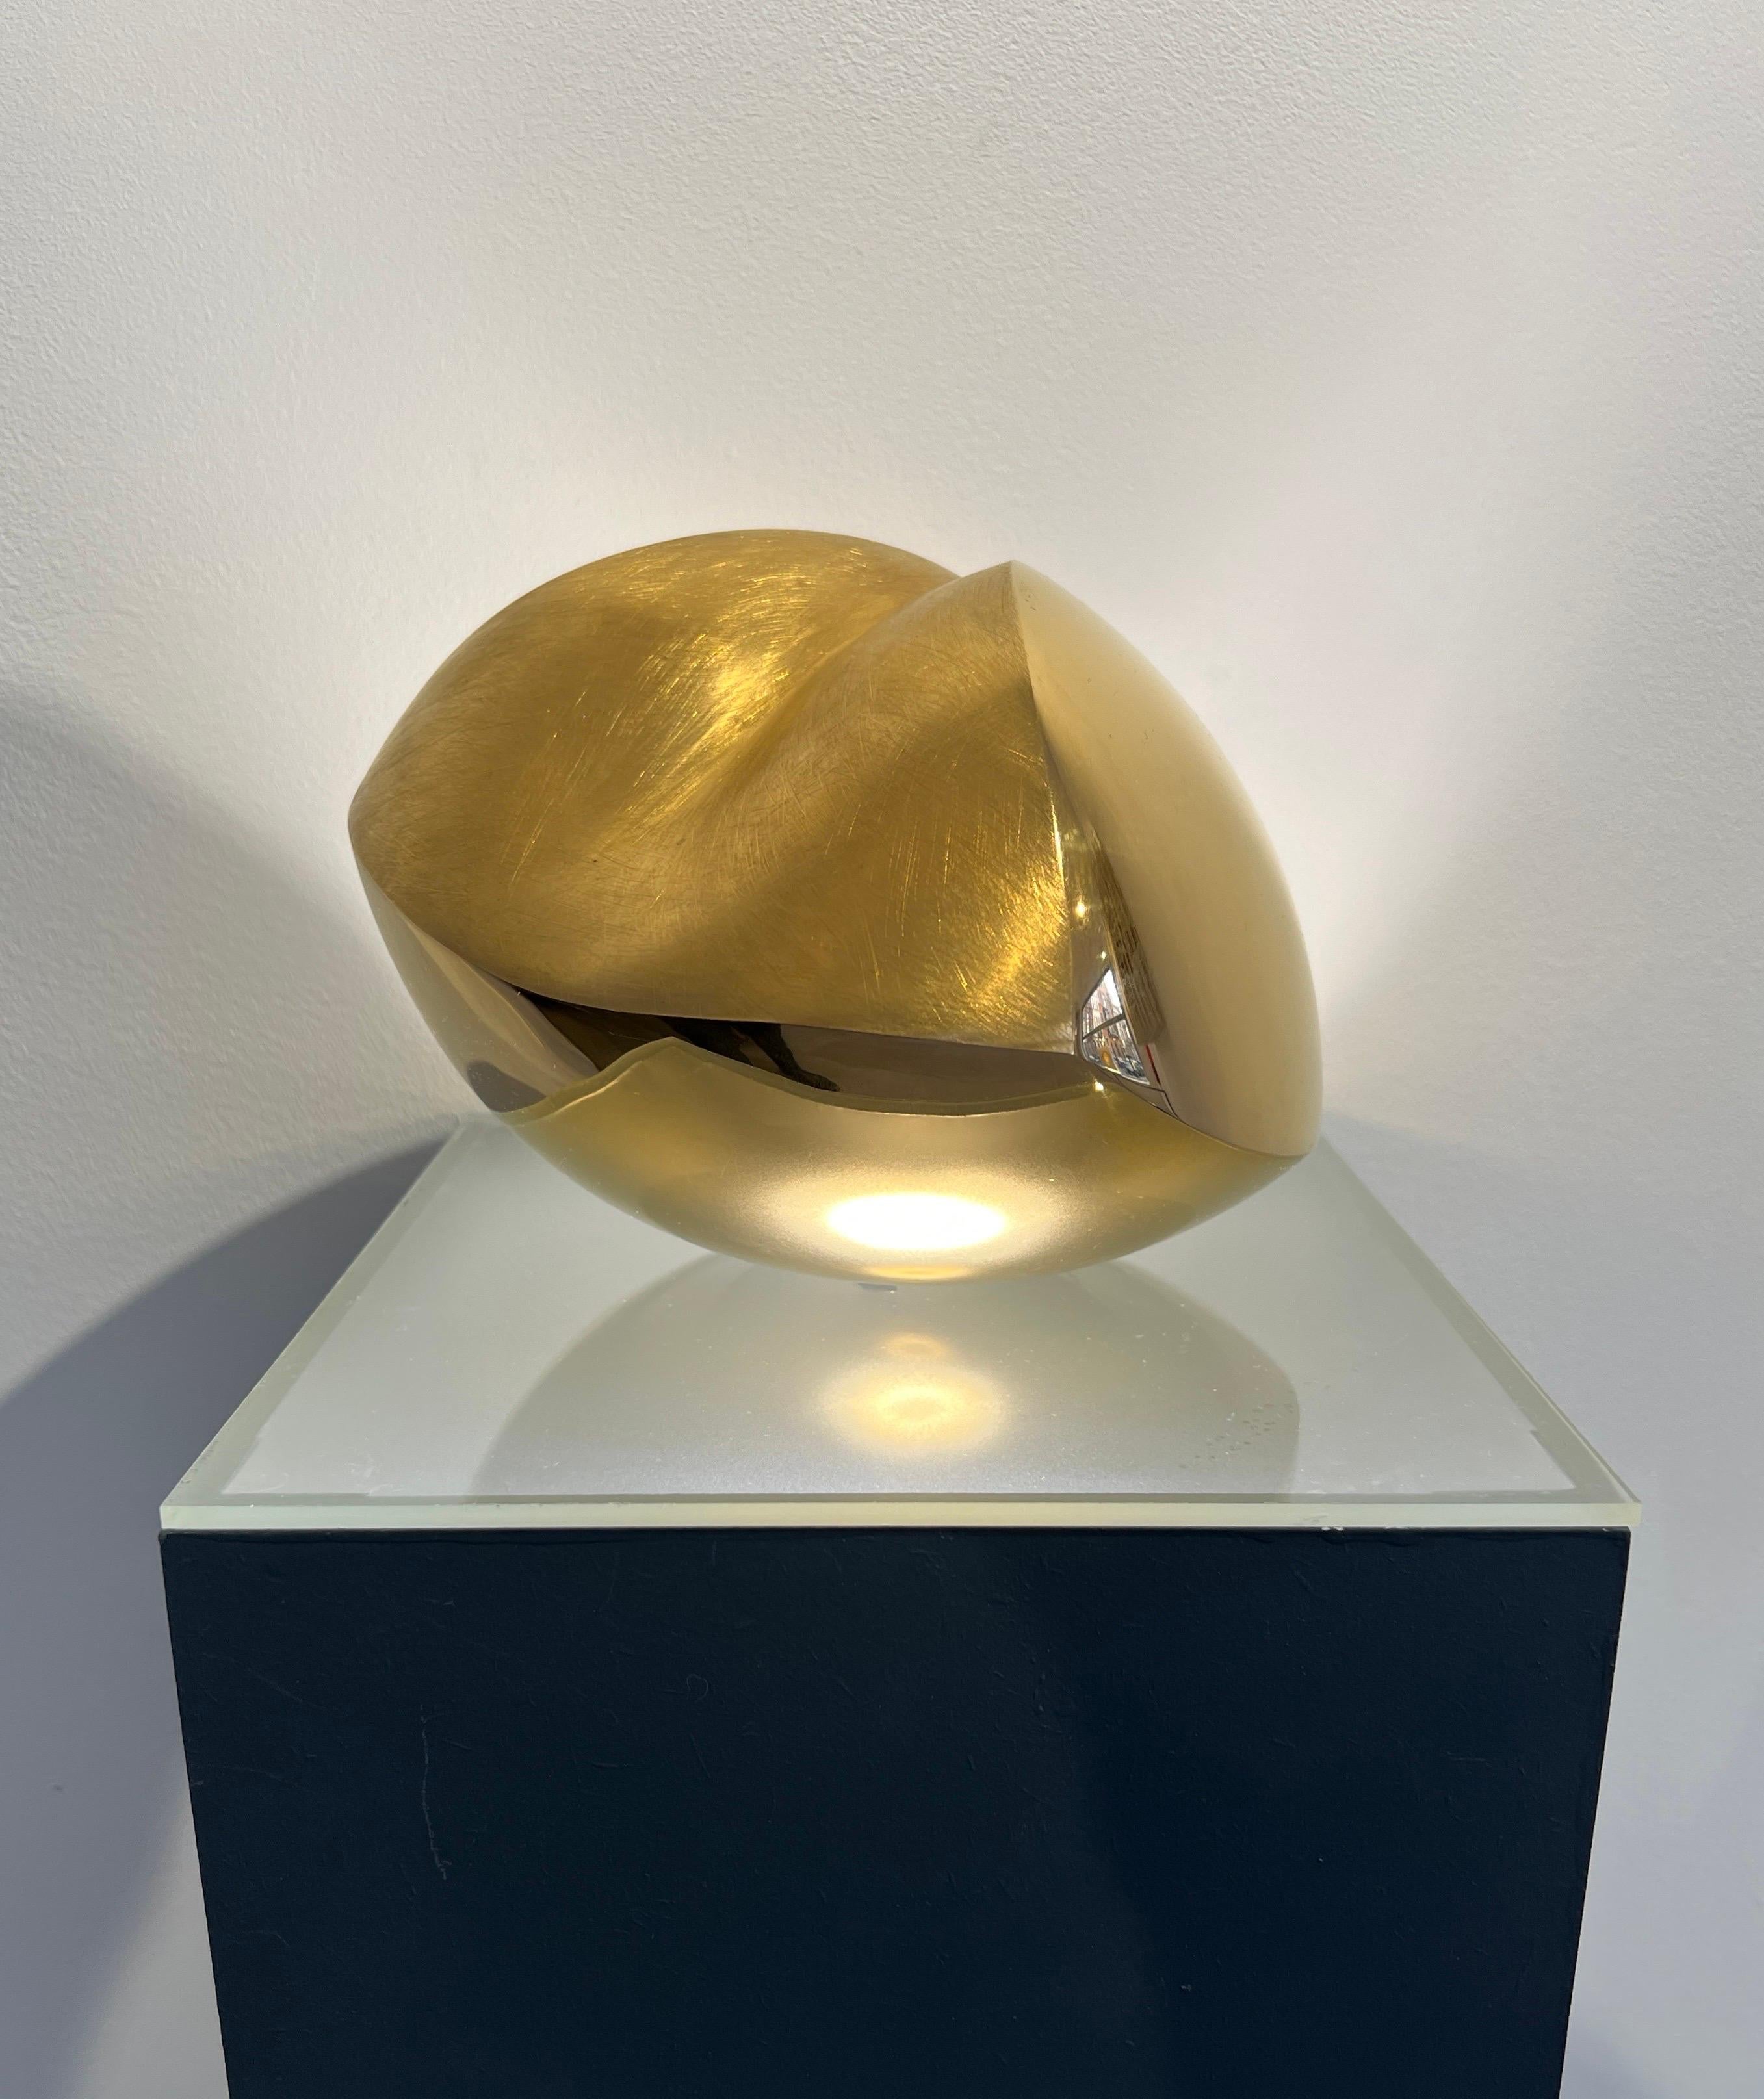 Mechthild Ehmann Abstract Sculpture - Little Heart abstract bronze